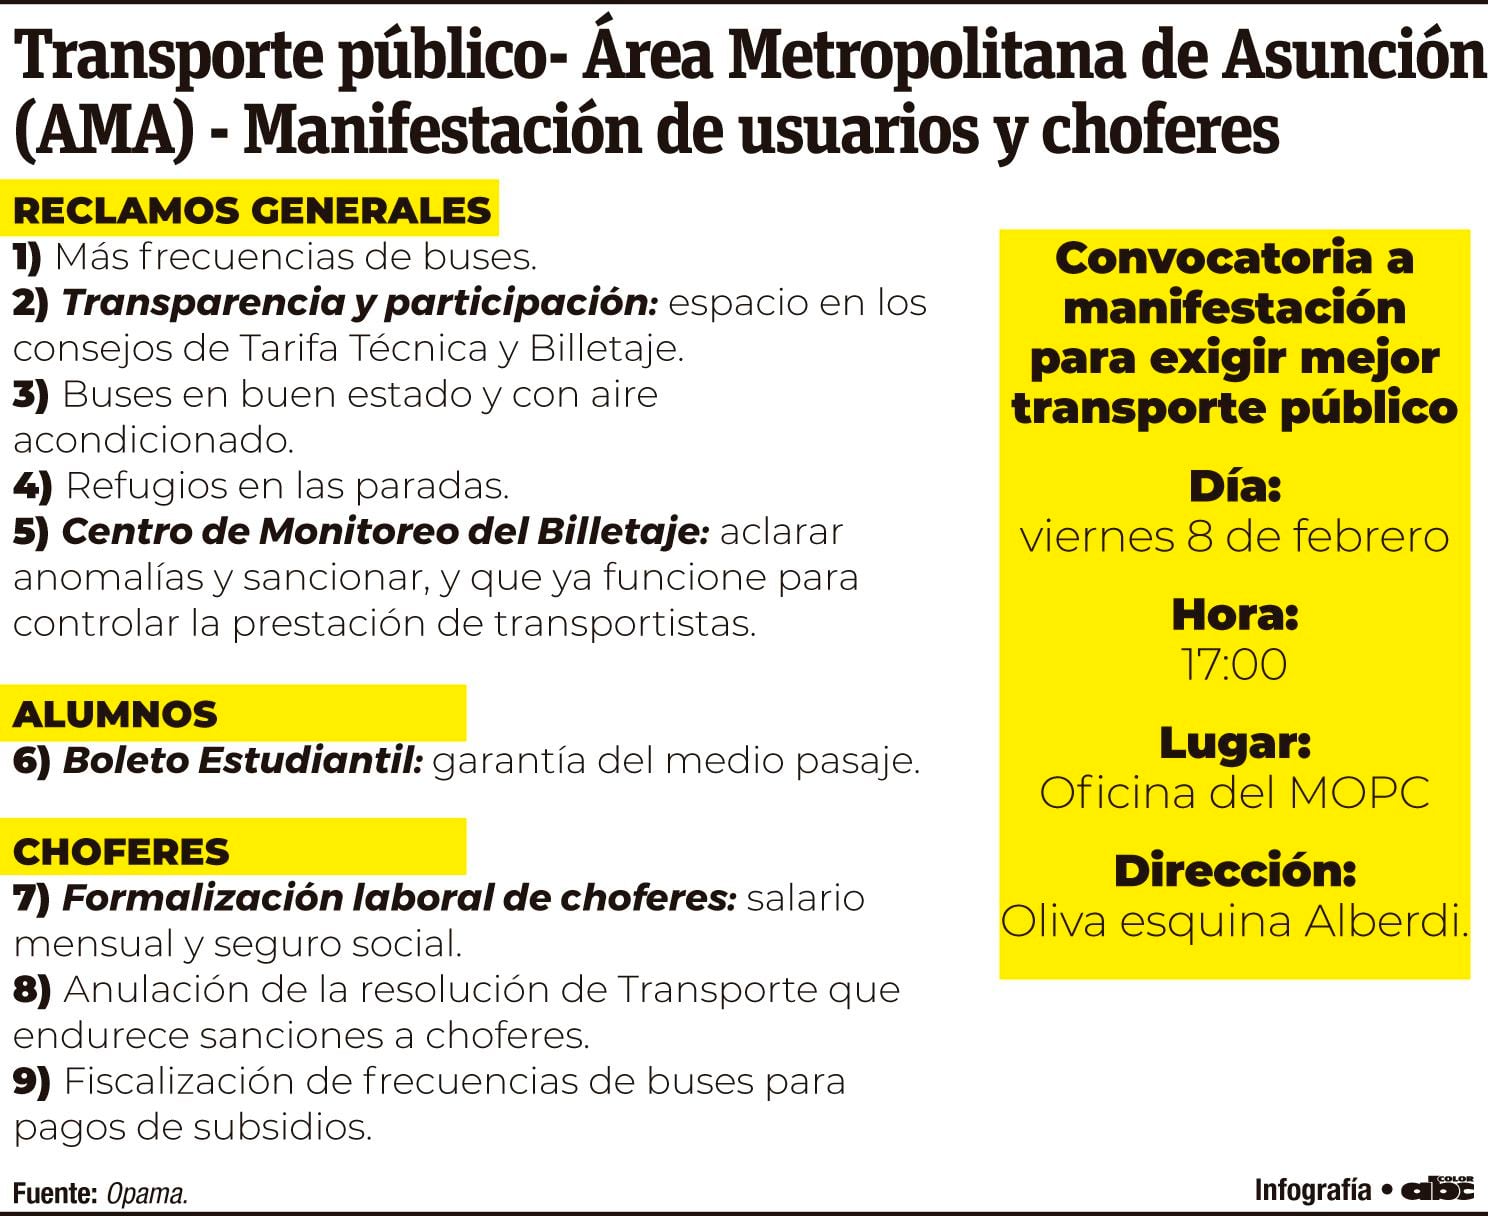 Transporte público - Área Metropolitana de Asunción (AMA) - Manifestación de usuarios y choferes